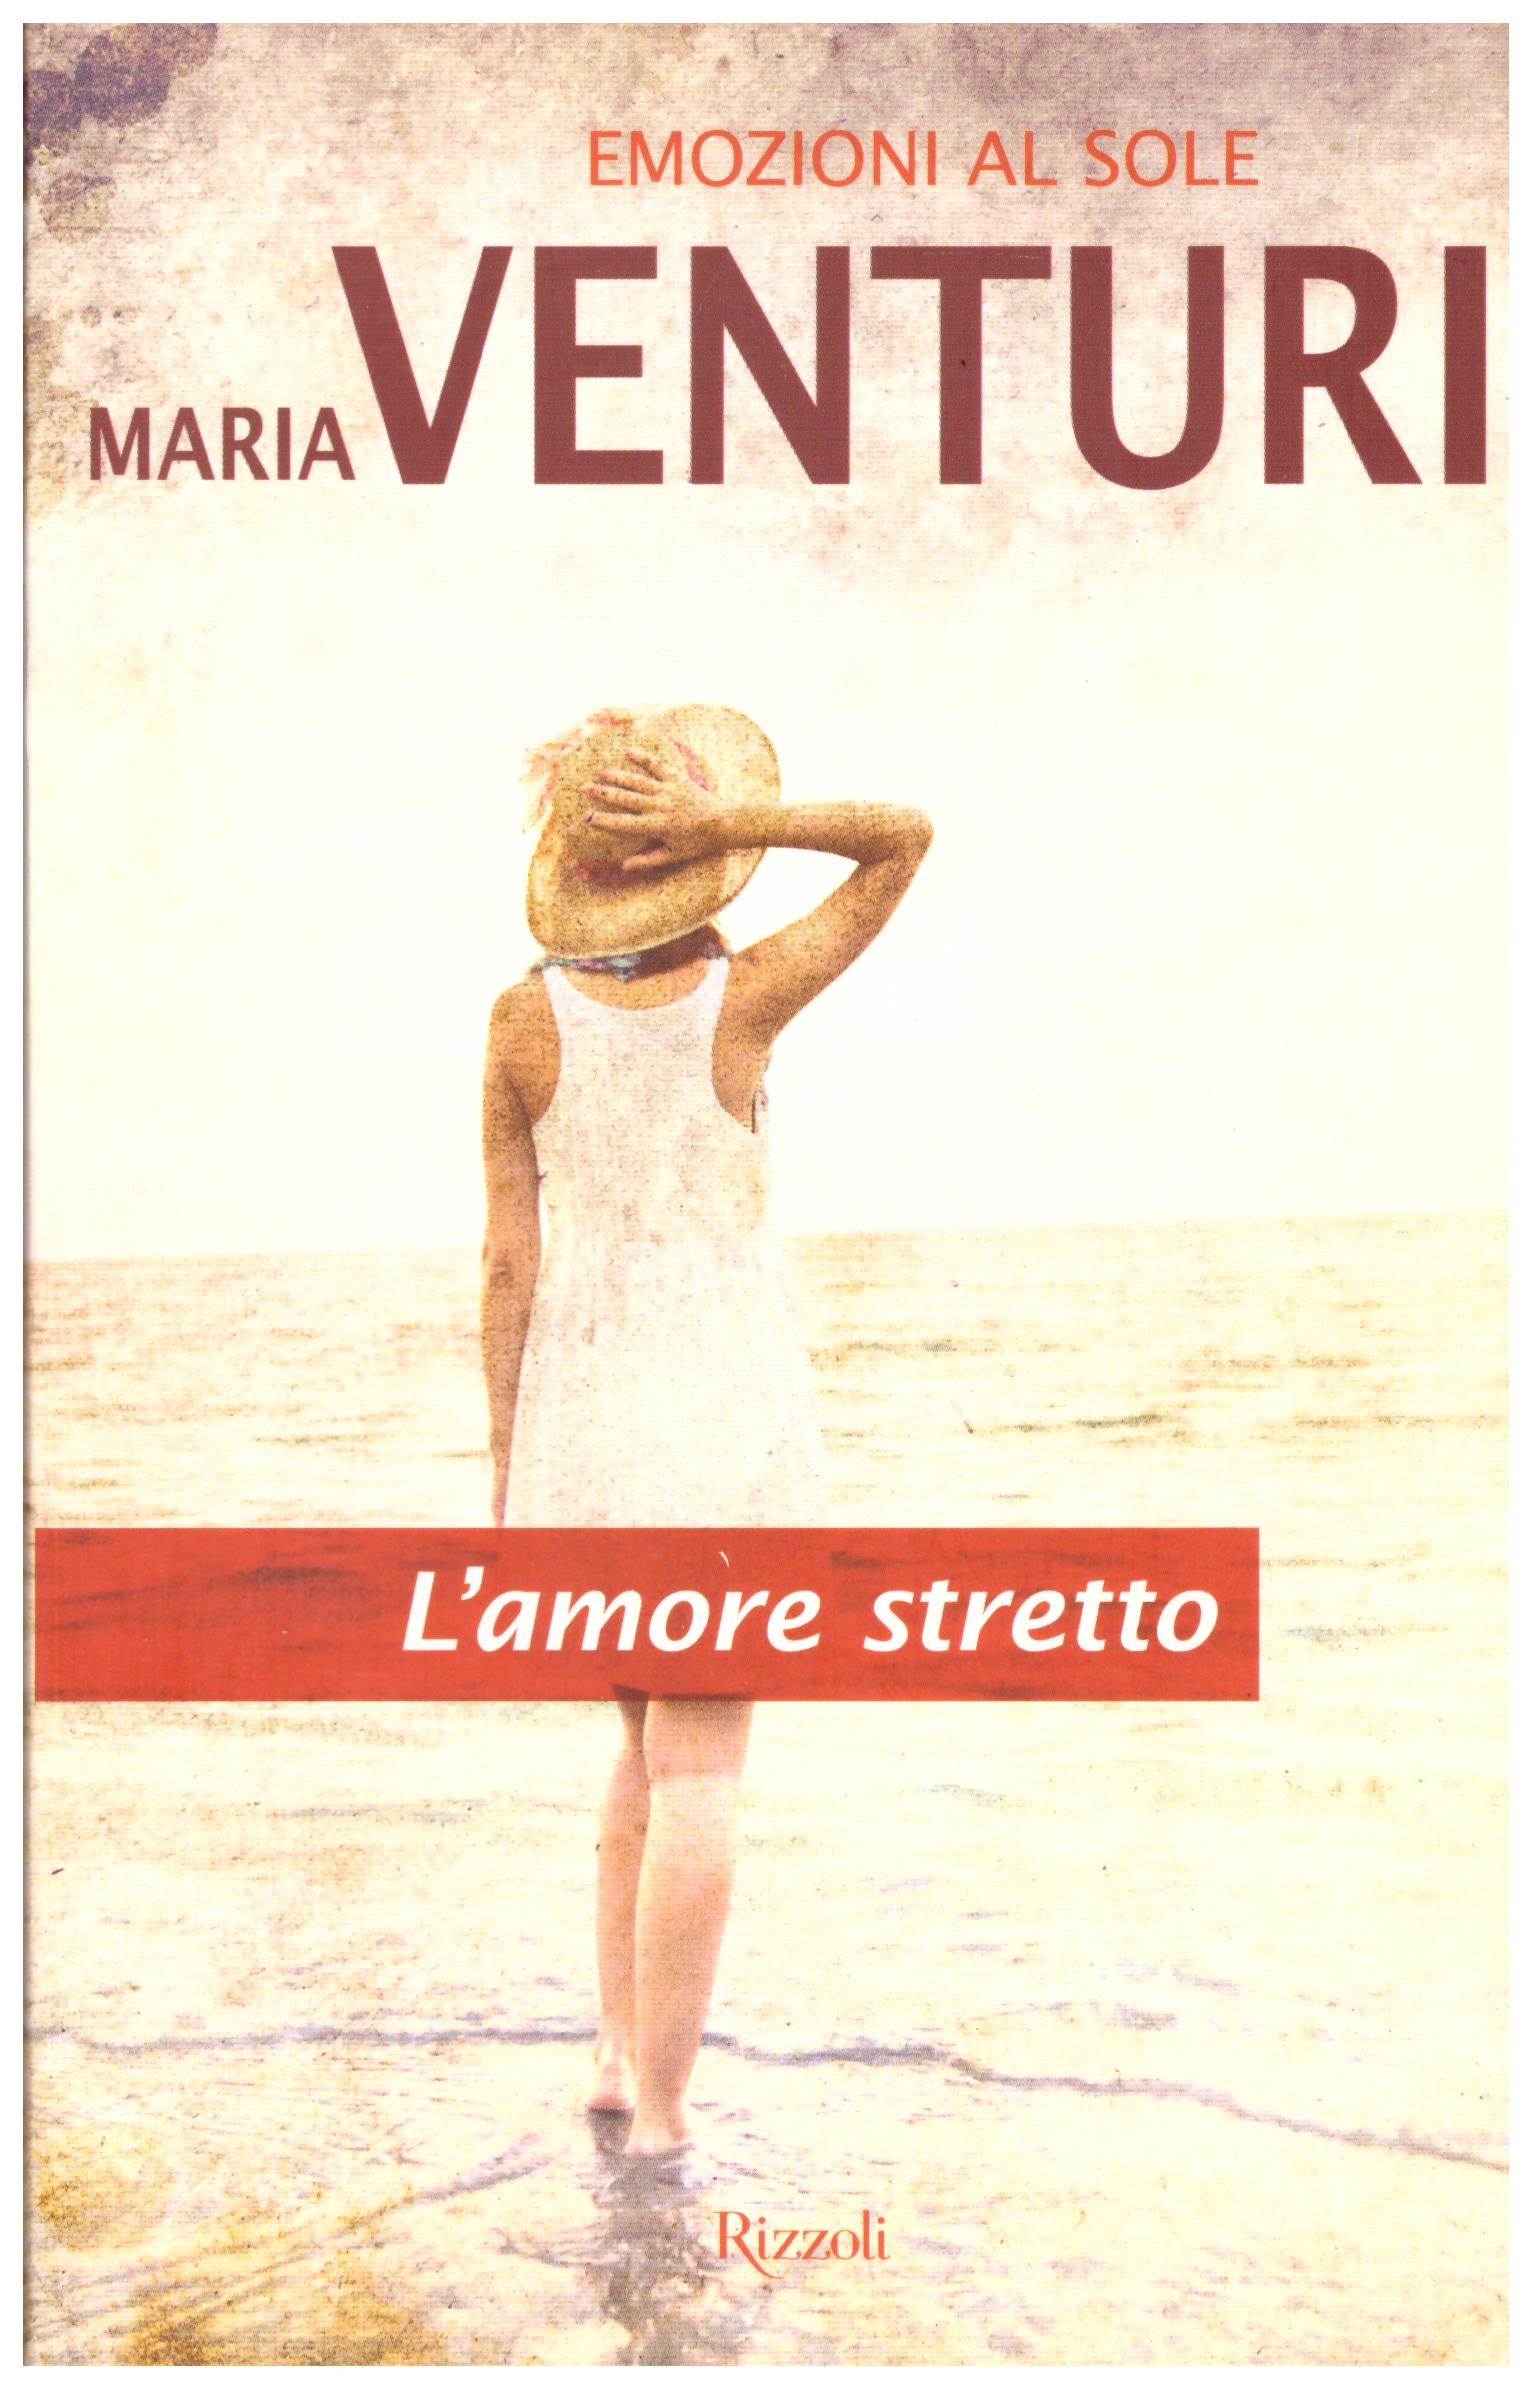 Titolo: L'amore stretto  Autore: Maria Venturi  Editore: Rizzoli, 2012